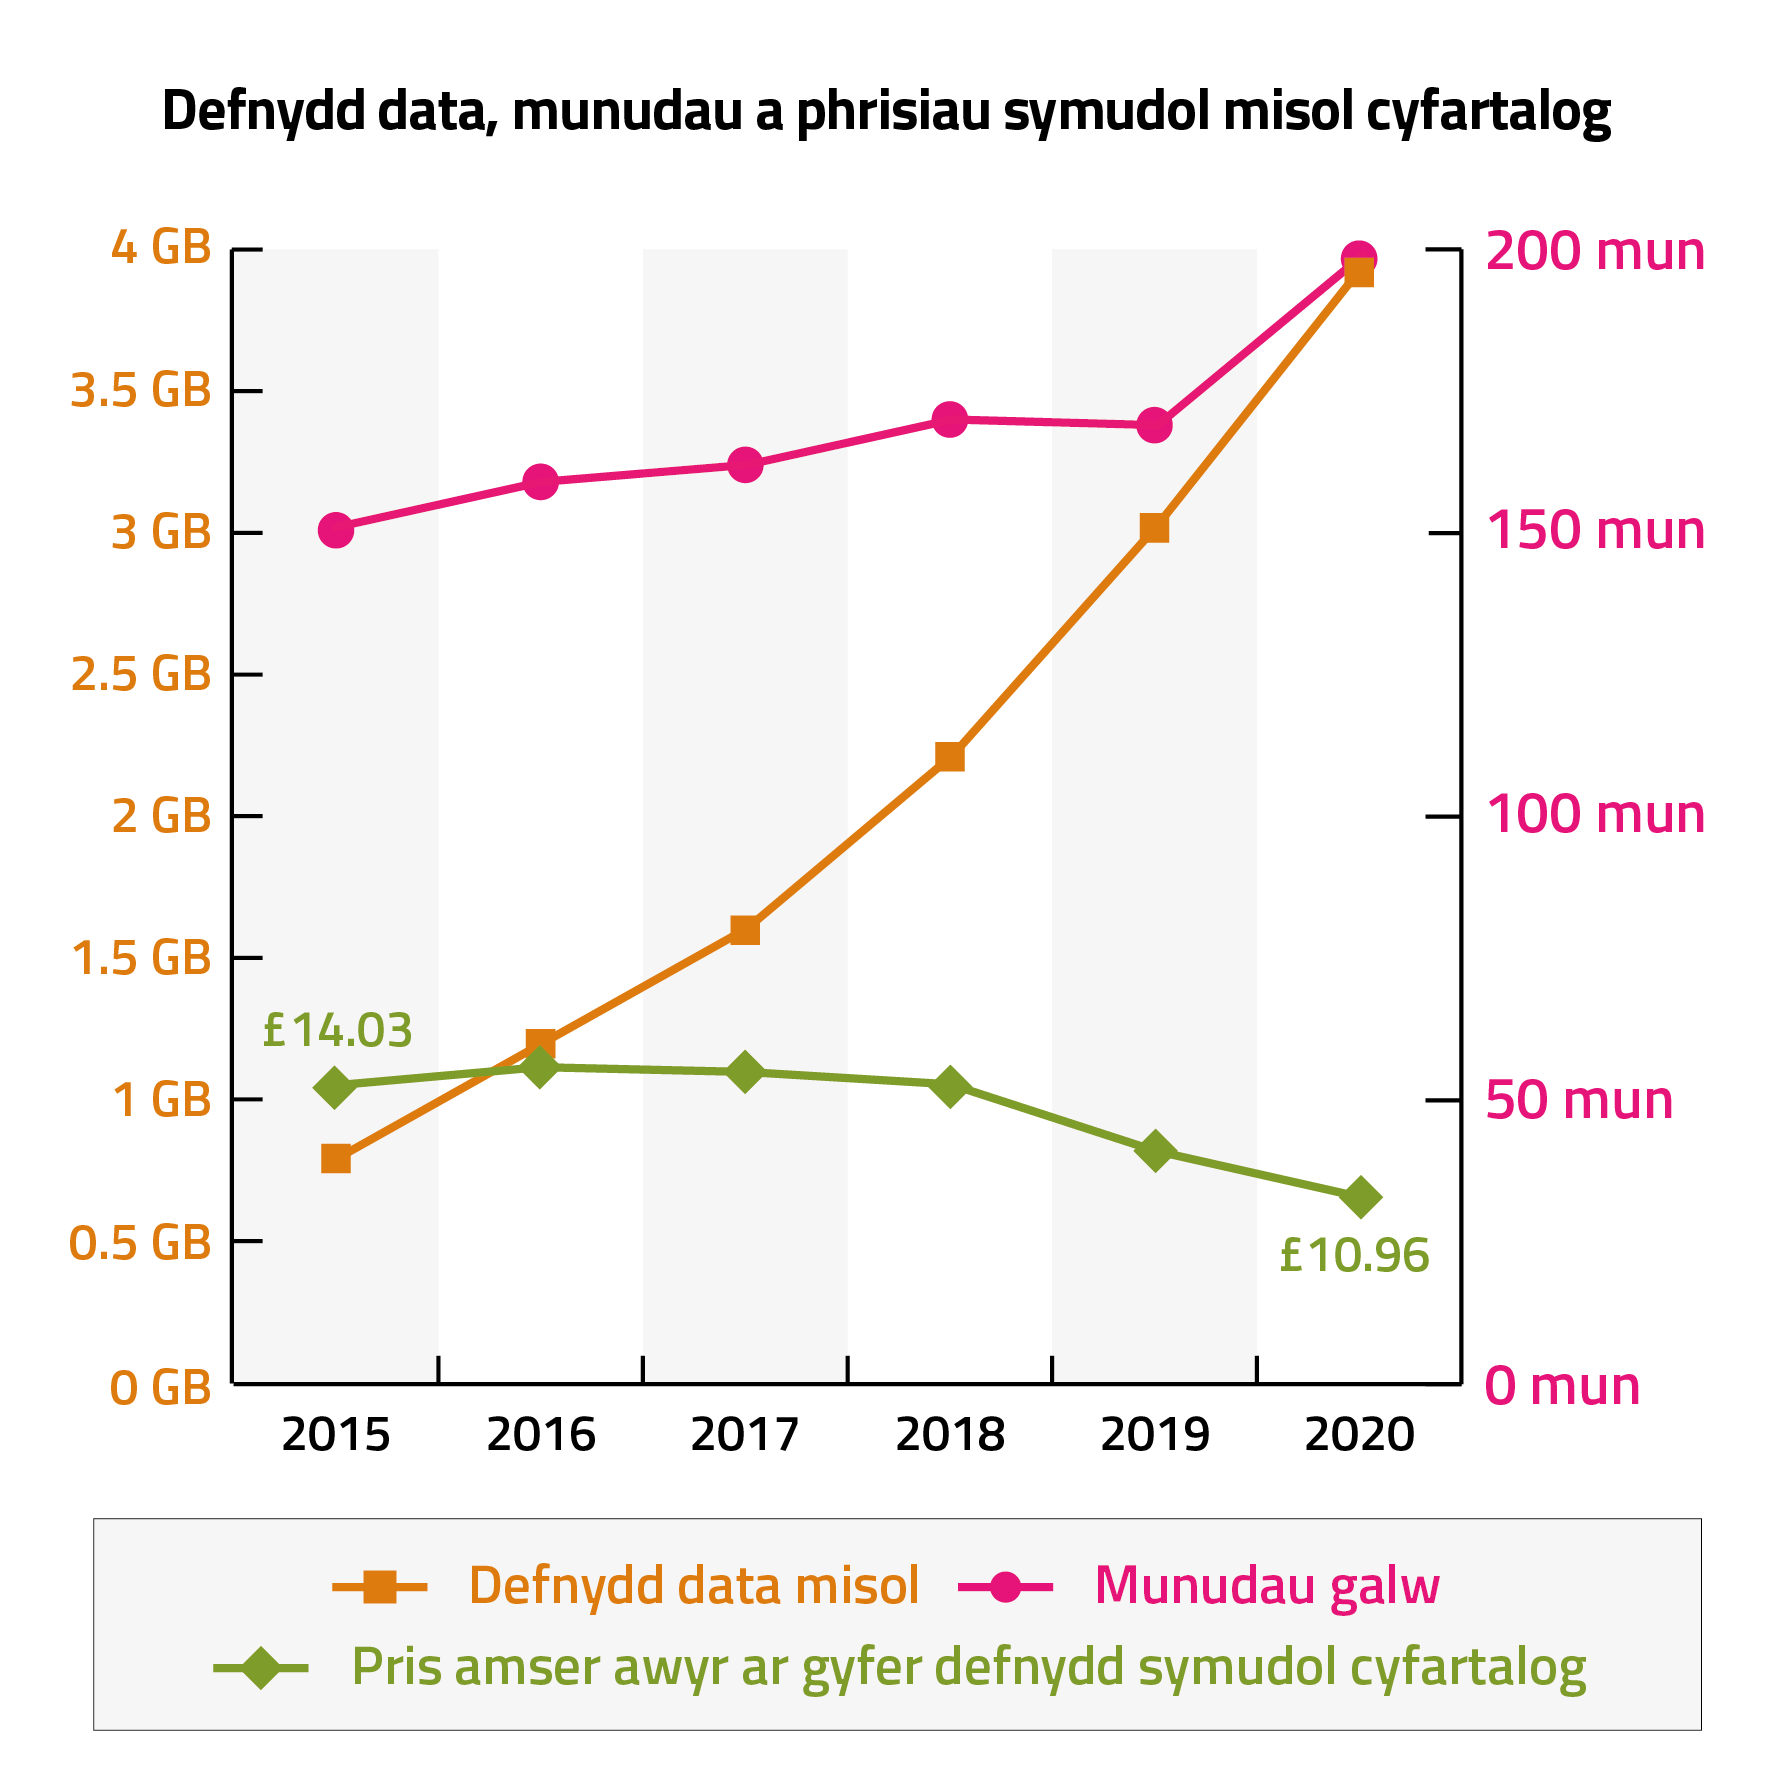 Graff yn dangos defnydd data, munudau a phrisiau symudol misol cyfartalog rhwng 2015-2020